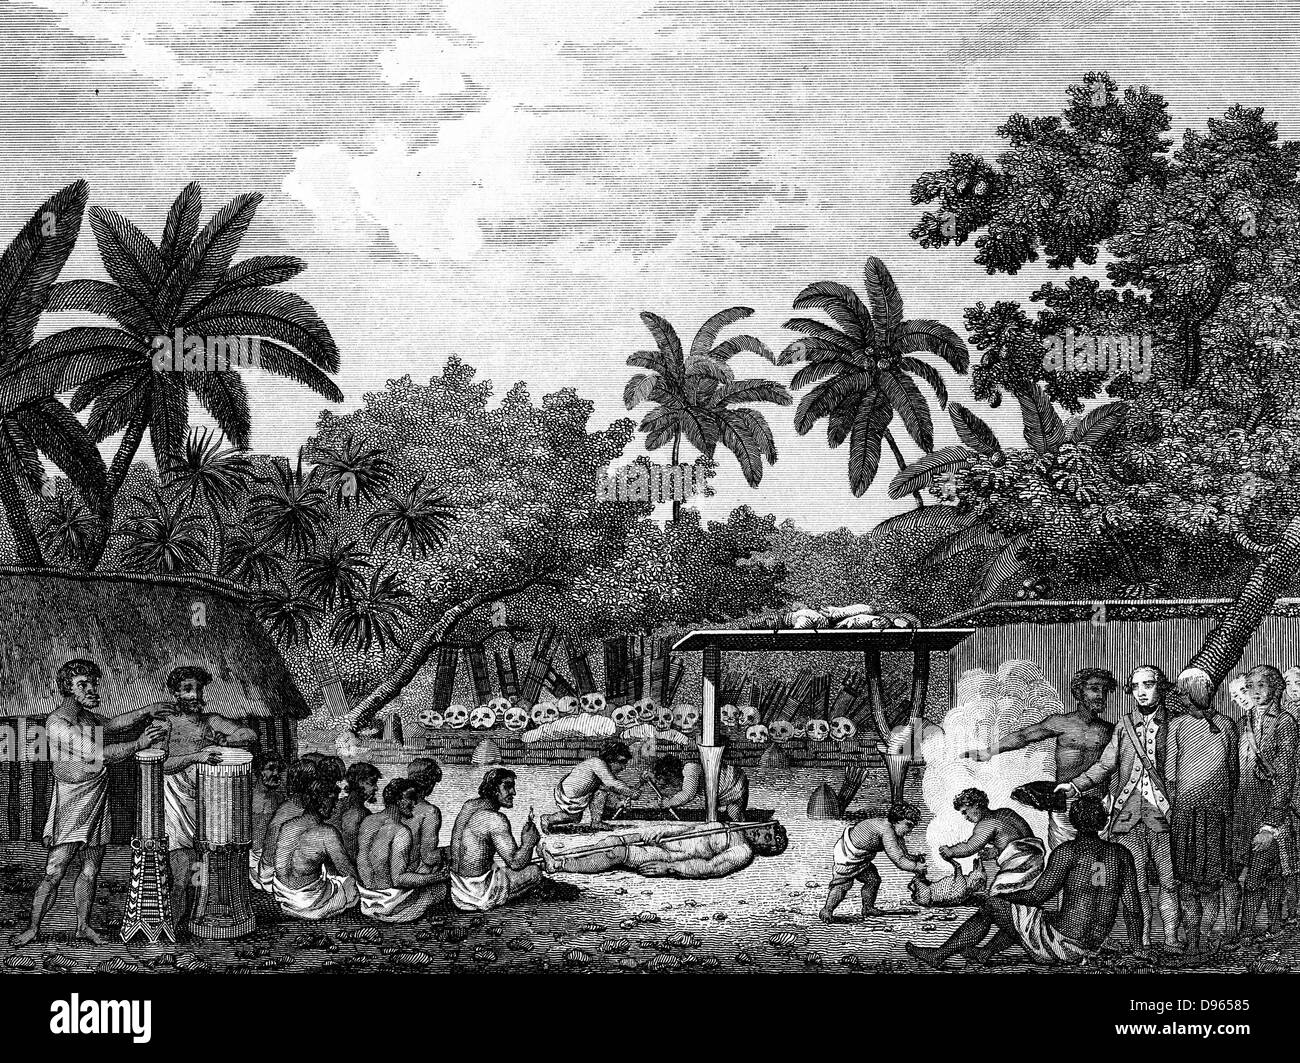 James Cook (1728-79), navigateur anglais témoin de sacrifice humain à Taihiti Otaheite (c1773) au cours de son deuxième voyage du Pacifique 1772-1775. Gravure de 1815 édition de Cook's 'Voyages'. Banque D'Images